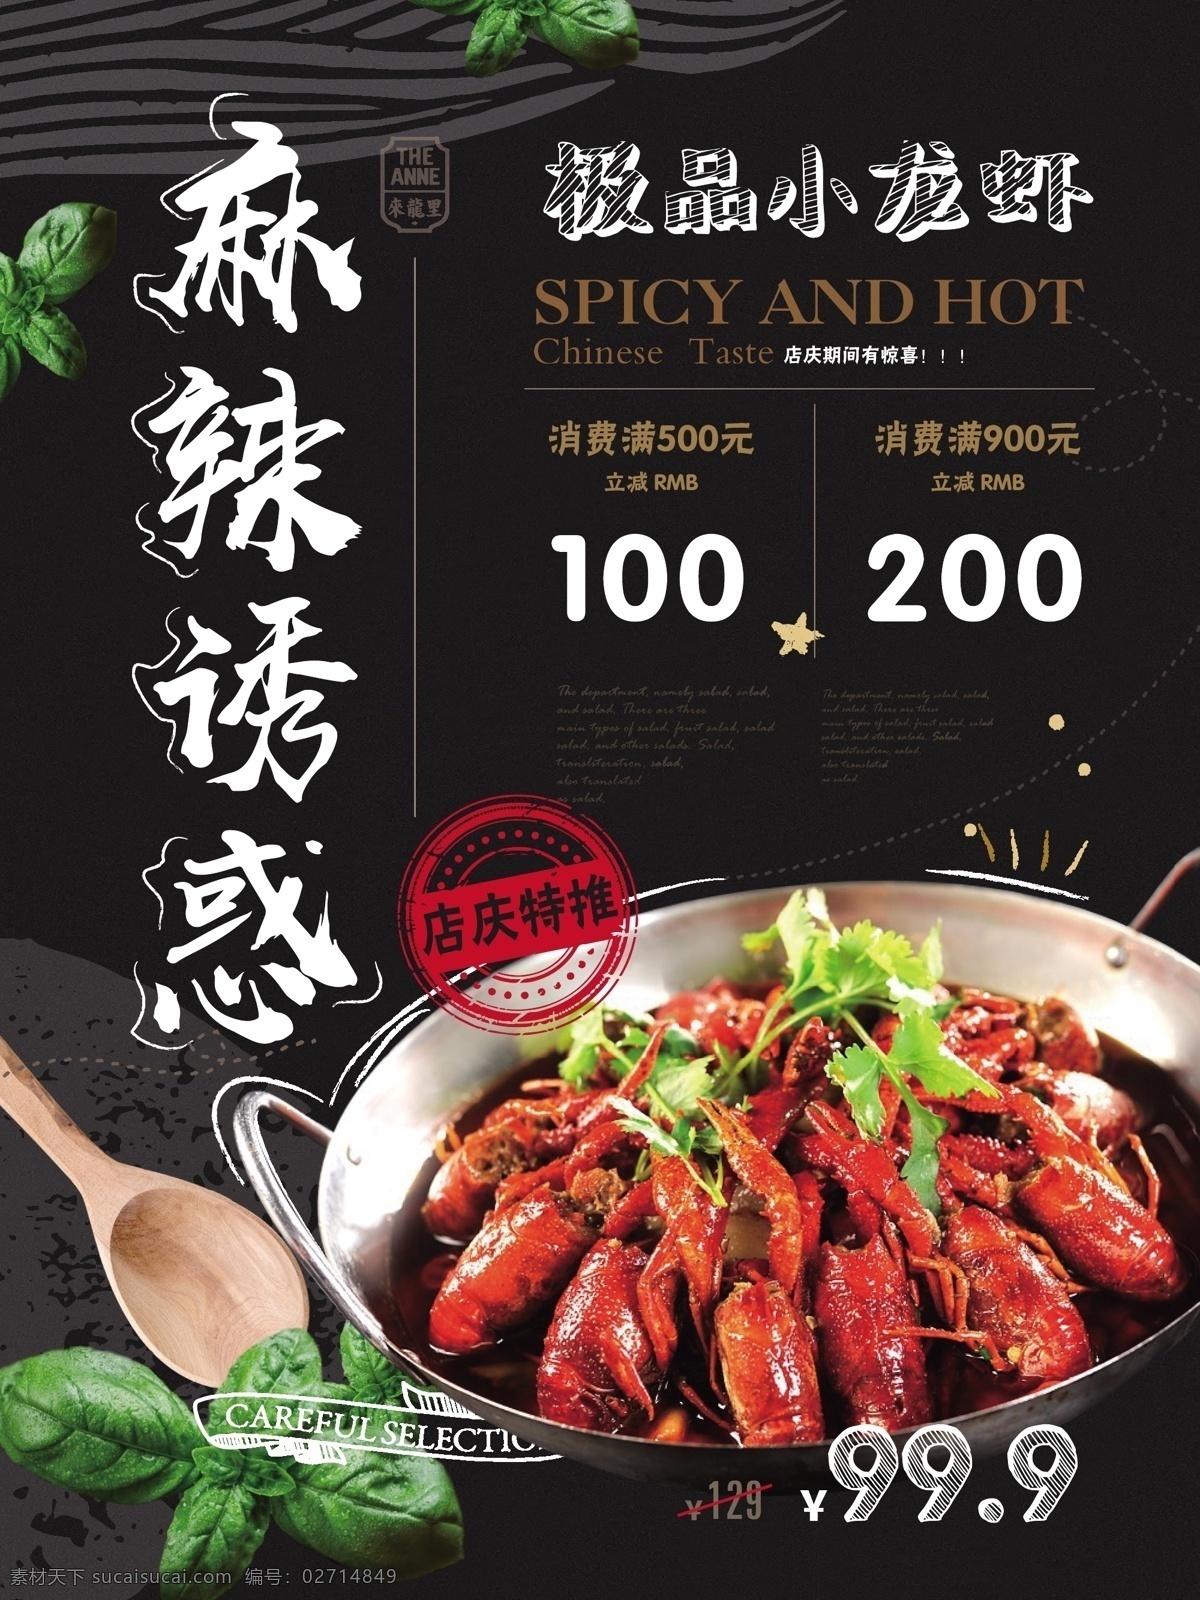 简约 风 小 龙虾 促销 海报 宣传 美食 健康 优惠 简约风 麻辣诱惑 主题 小龙虾 餐饮店